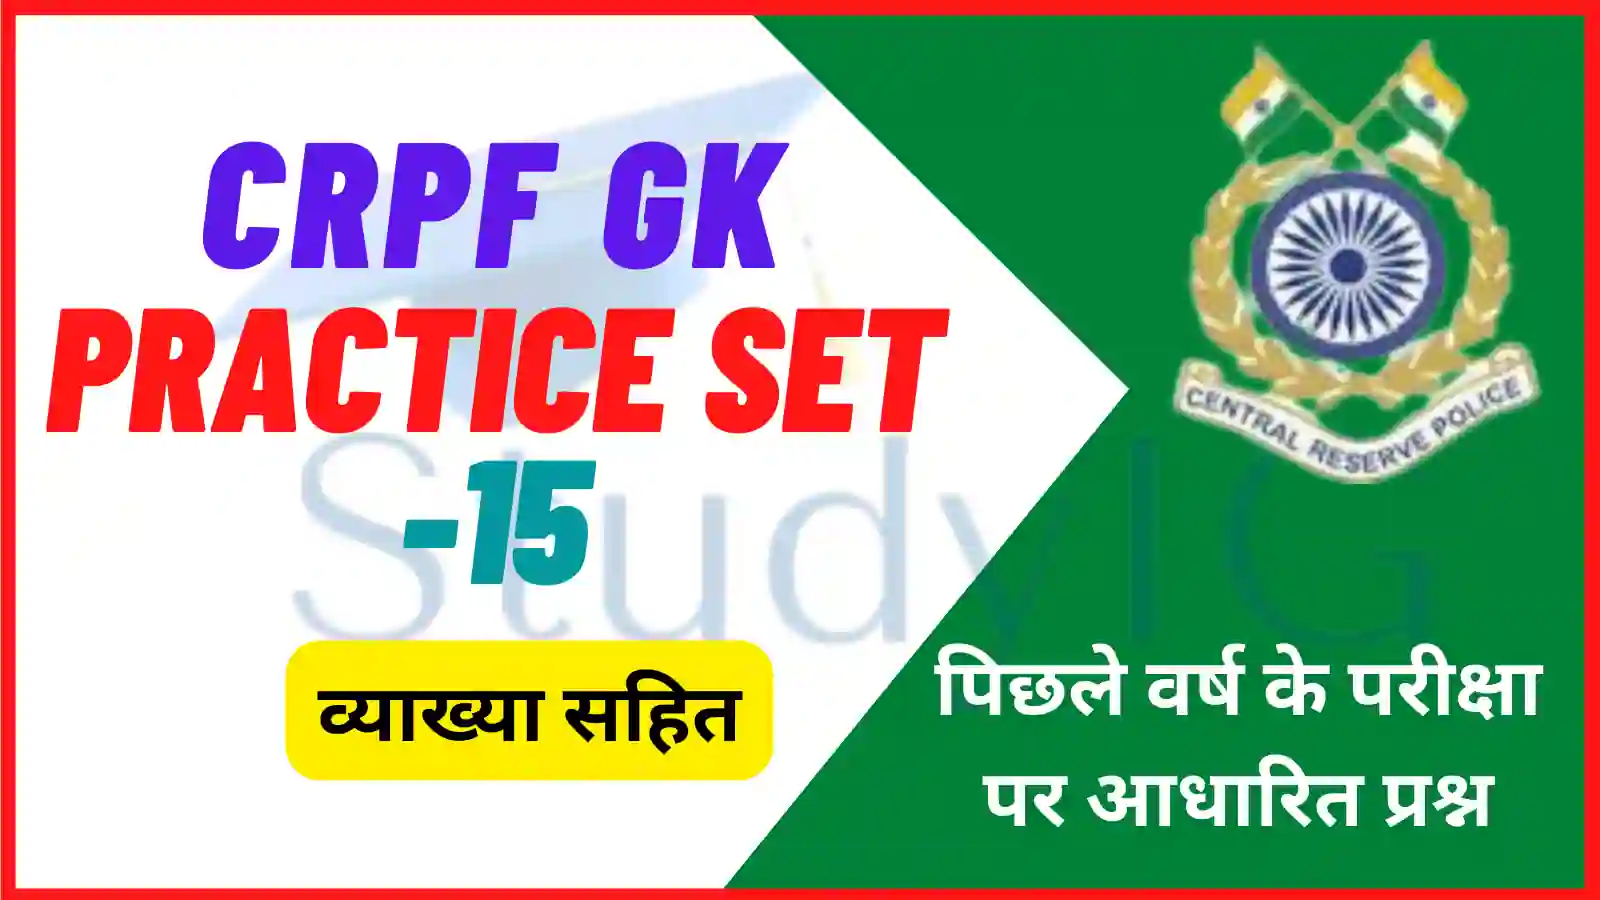 CRPF GK Practice Set - 15